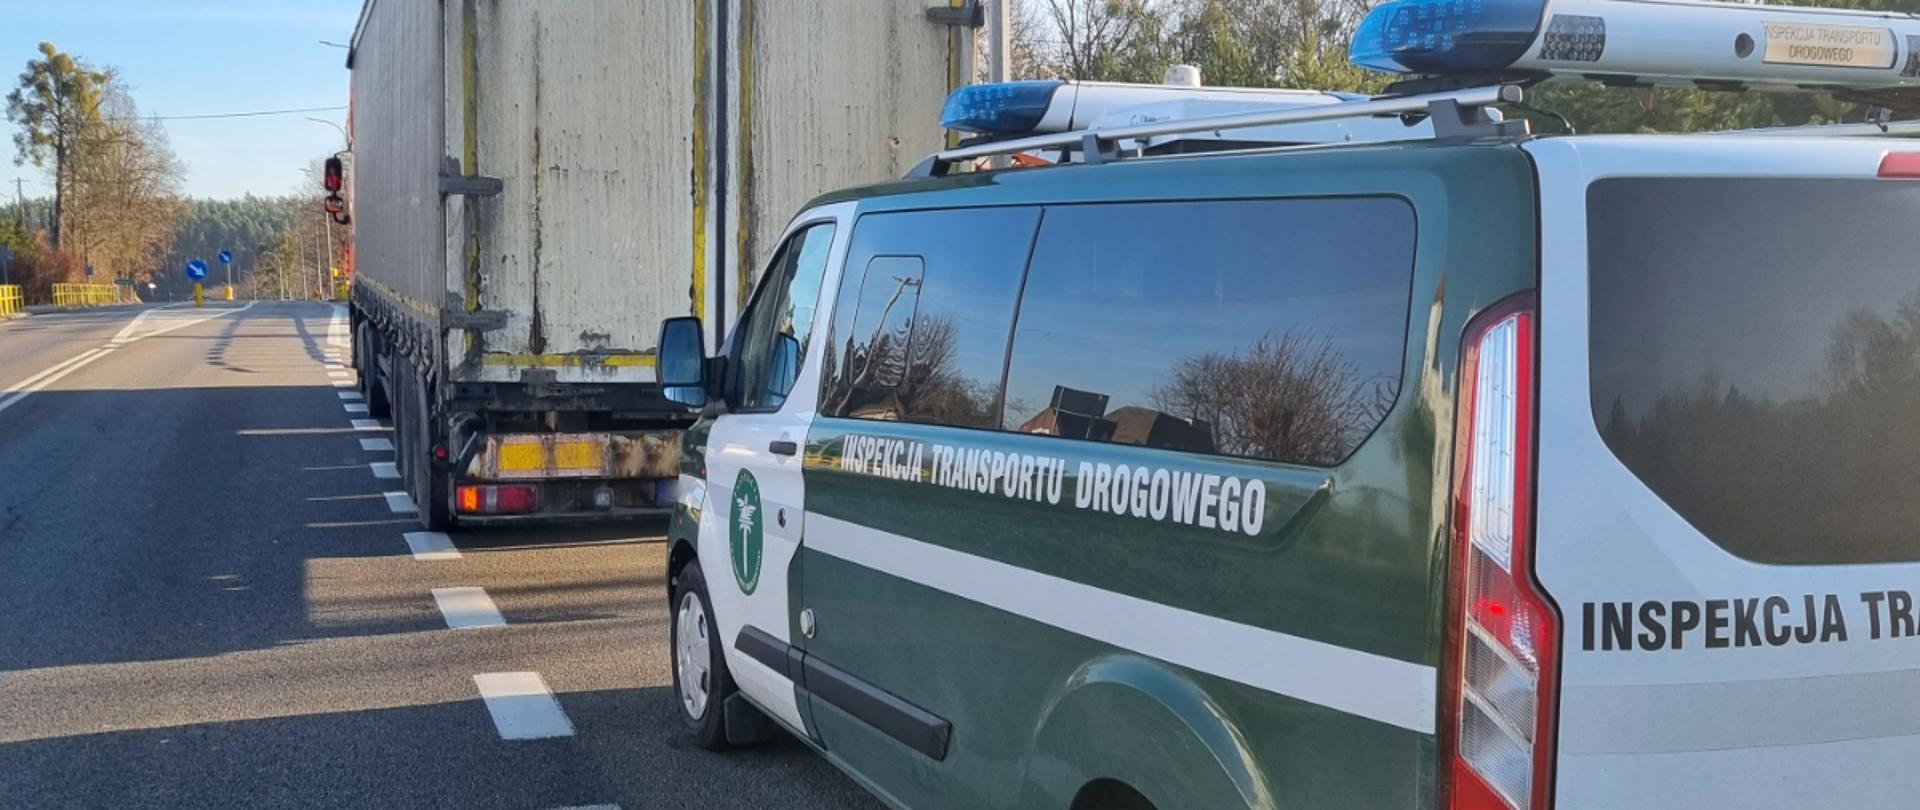 Zatrzymany zespół pojazdów poddany kontroli inspektorów z Wojewódzkiego Inspektoratu Transportu Drogowego w Gdańsku. Na pierwszym planie furgon ITD, przed nim ciężarówka, w której stwierdzona została usterka.